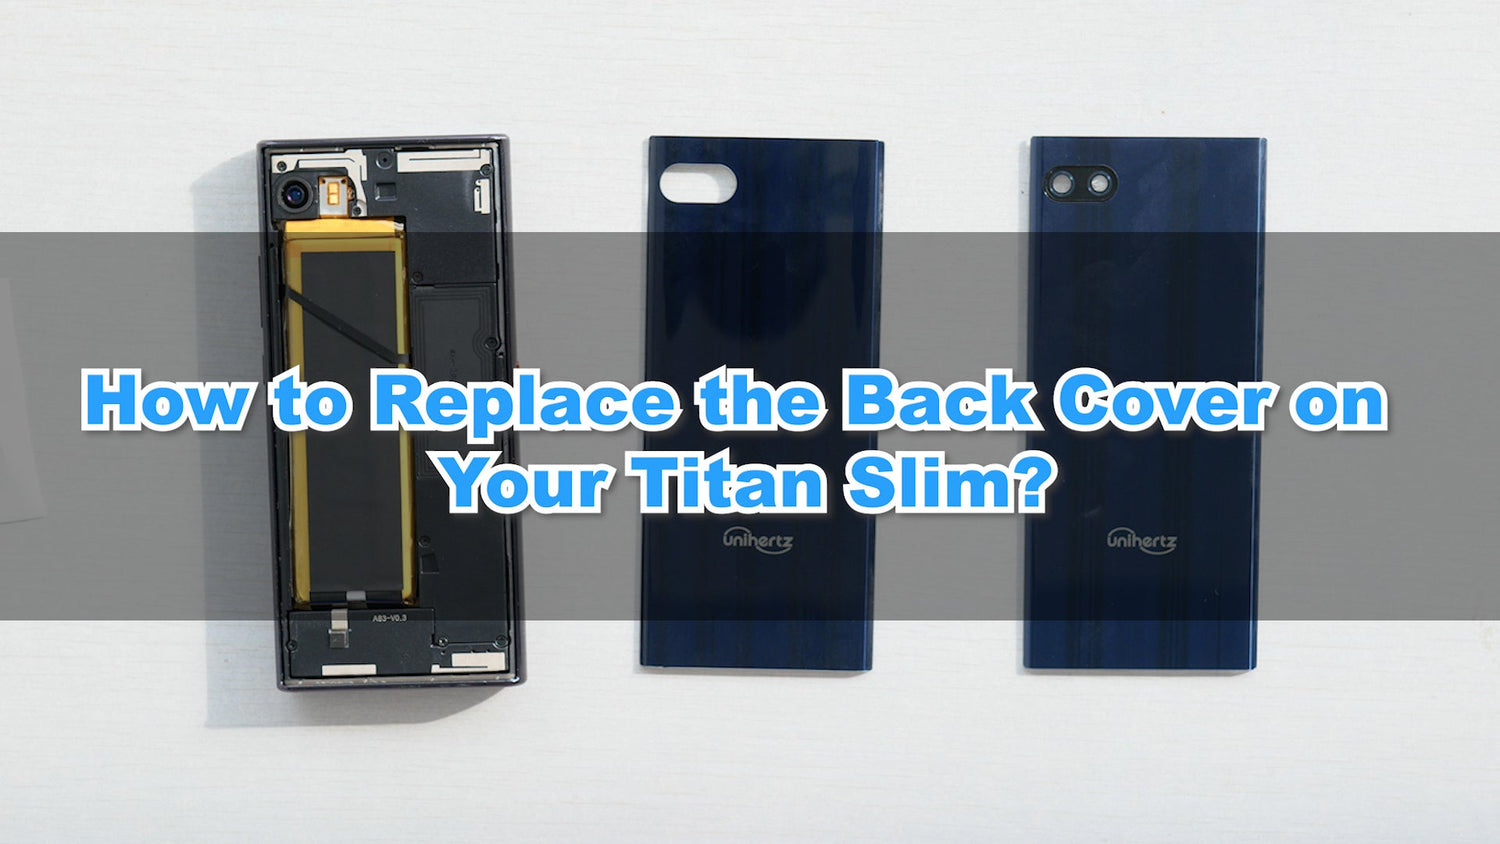 Unihertz Titan Slim Back Cover Replacement Tutorial - Unihertz